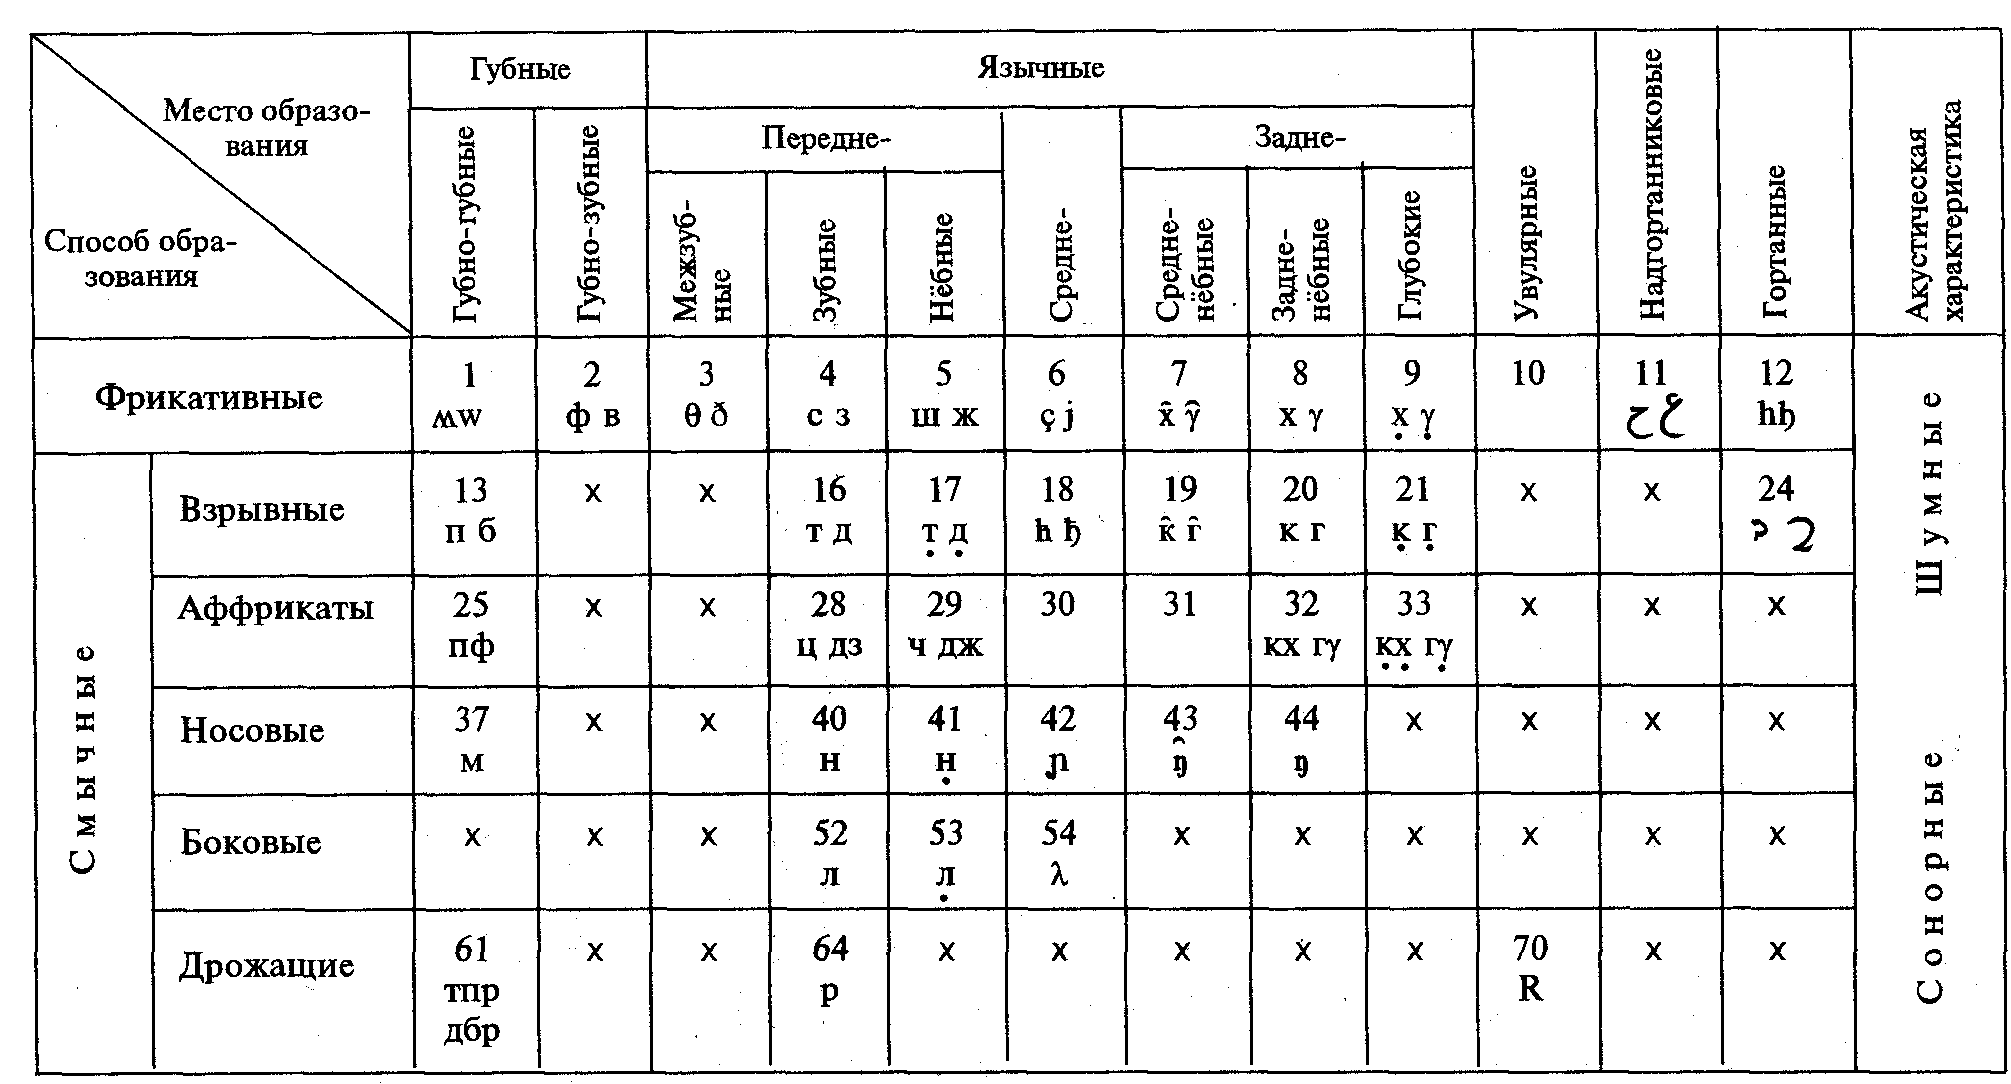 Какие ротовые звуки. Классификация согласных звуков таблица Реформатский. Классификация гласных звуков таблица. Артикуляционная классификация согласных звуков таблица. Таблица классификации согласных звуков фонетика.